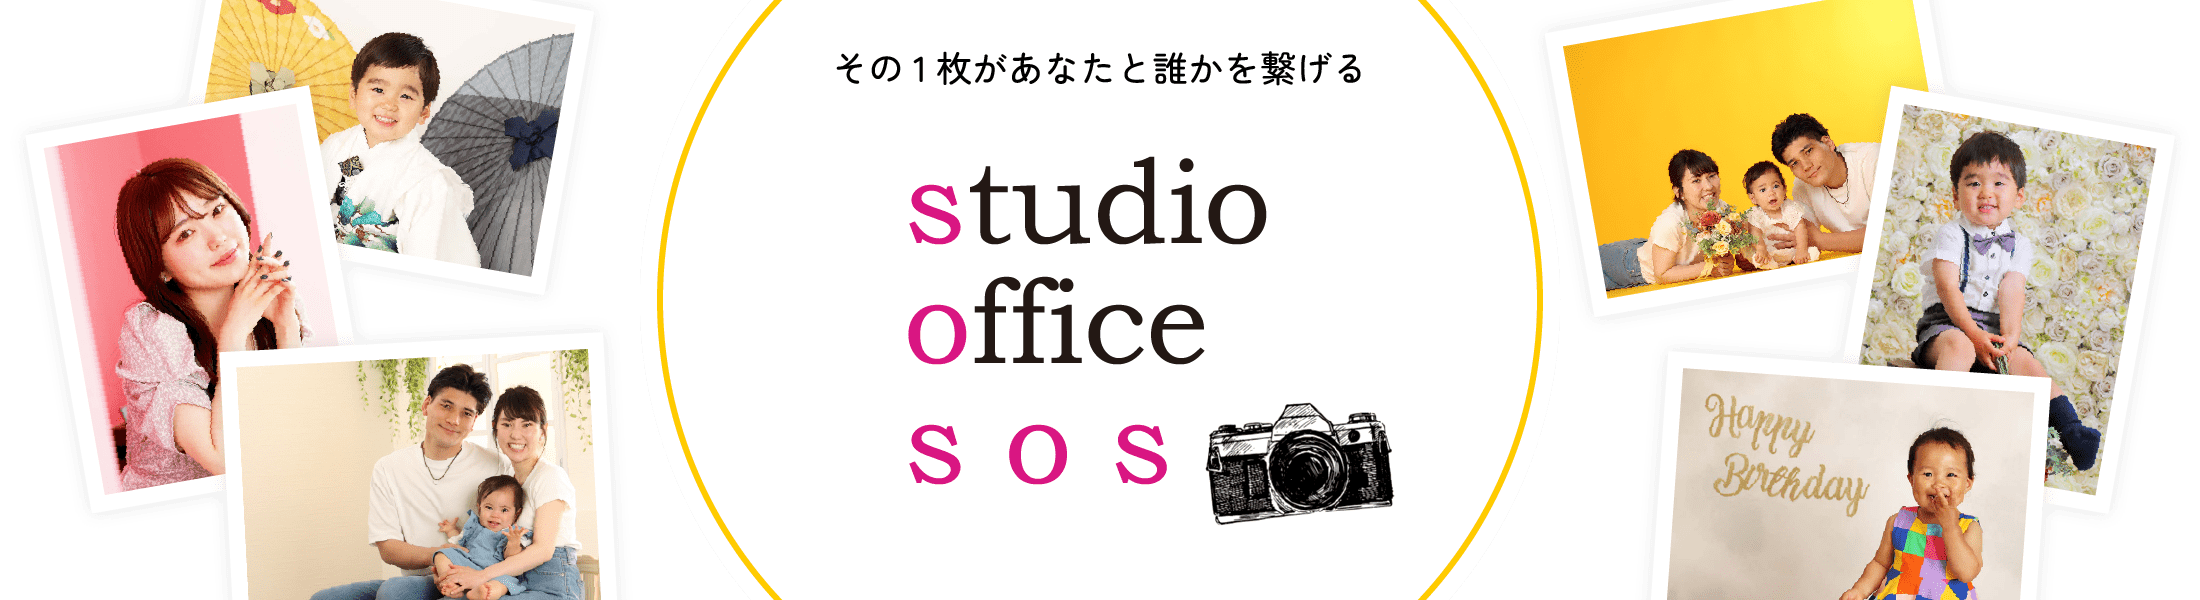 studio office SOS その1枚があなたと誰かを繋げる